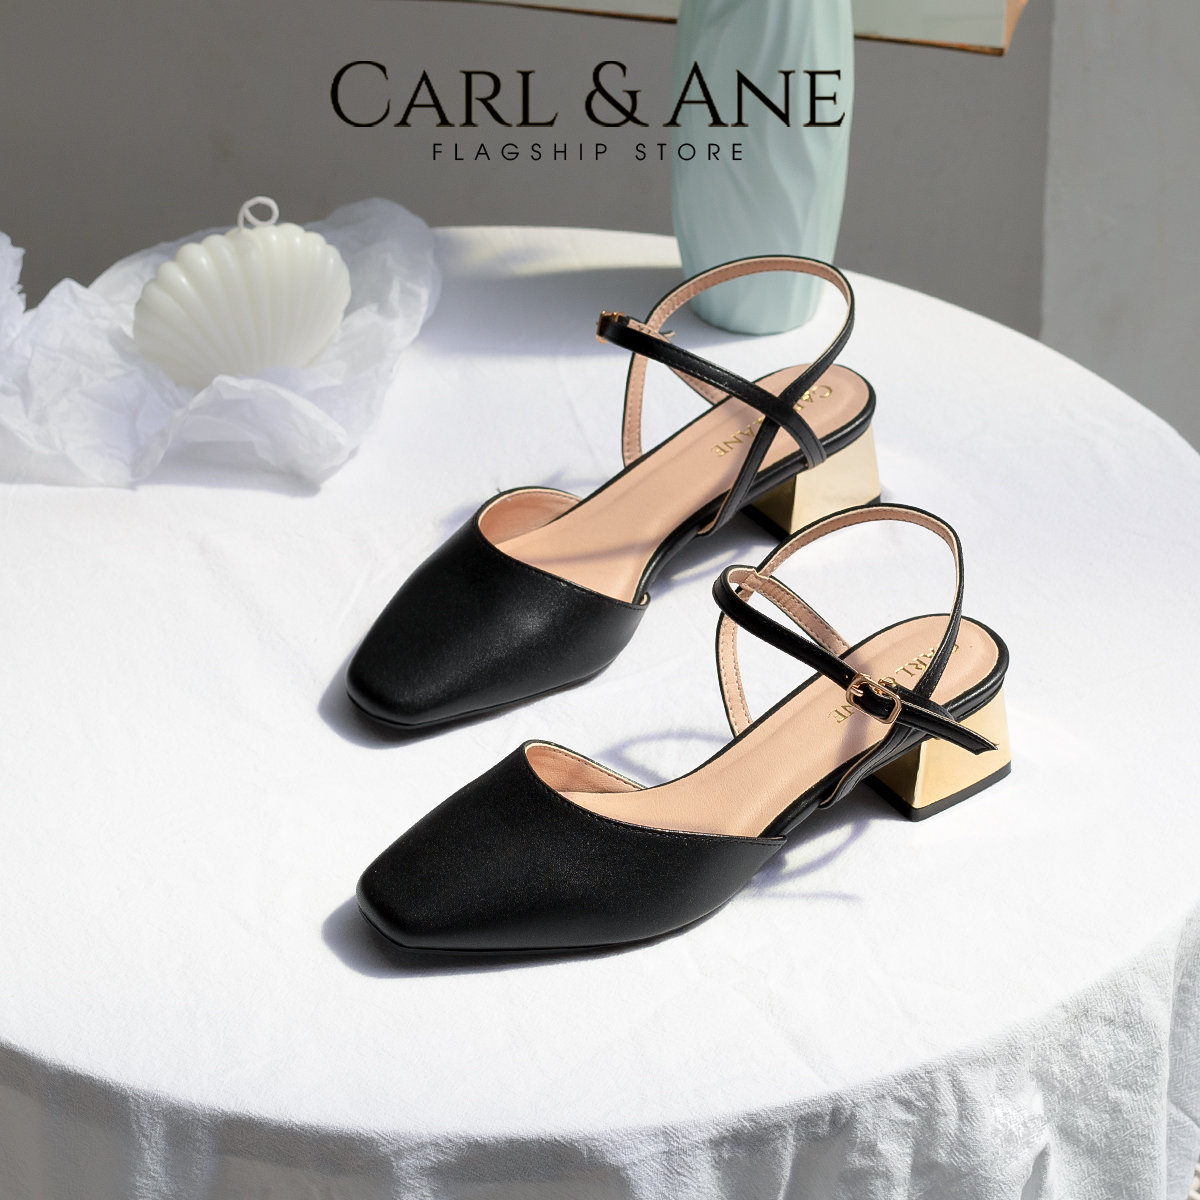 [CHỈ 18/12 0H-12H - MUA 3 GIẢM 20%] Carl & Ane - Giày cao gót mũi nhọn phối dây quai mảnh thời trang công sở cao 3.5cm màu nude - CL029